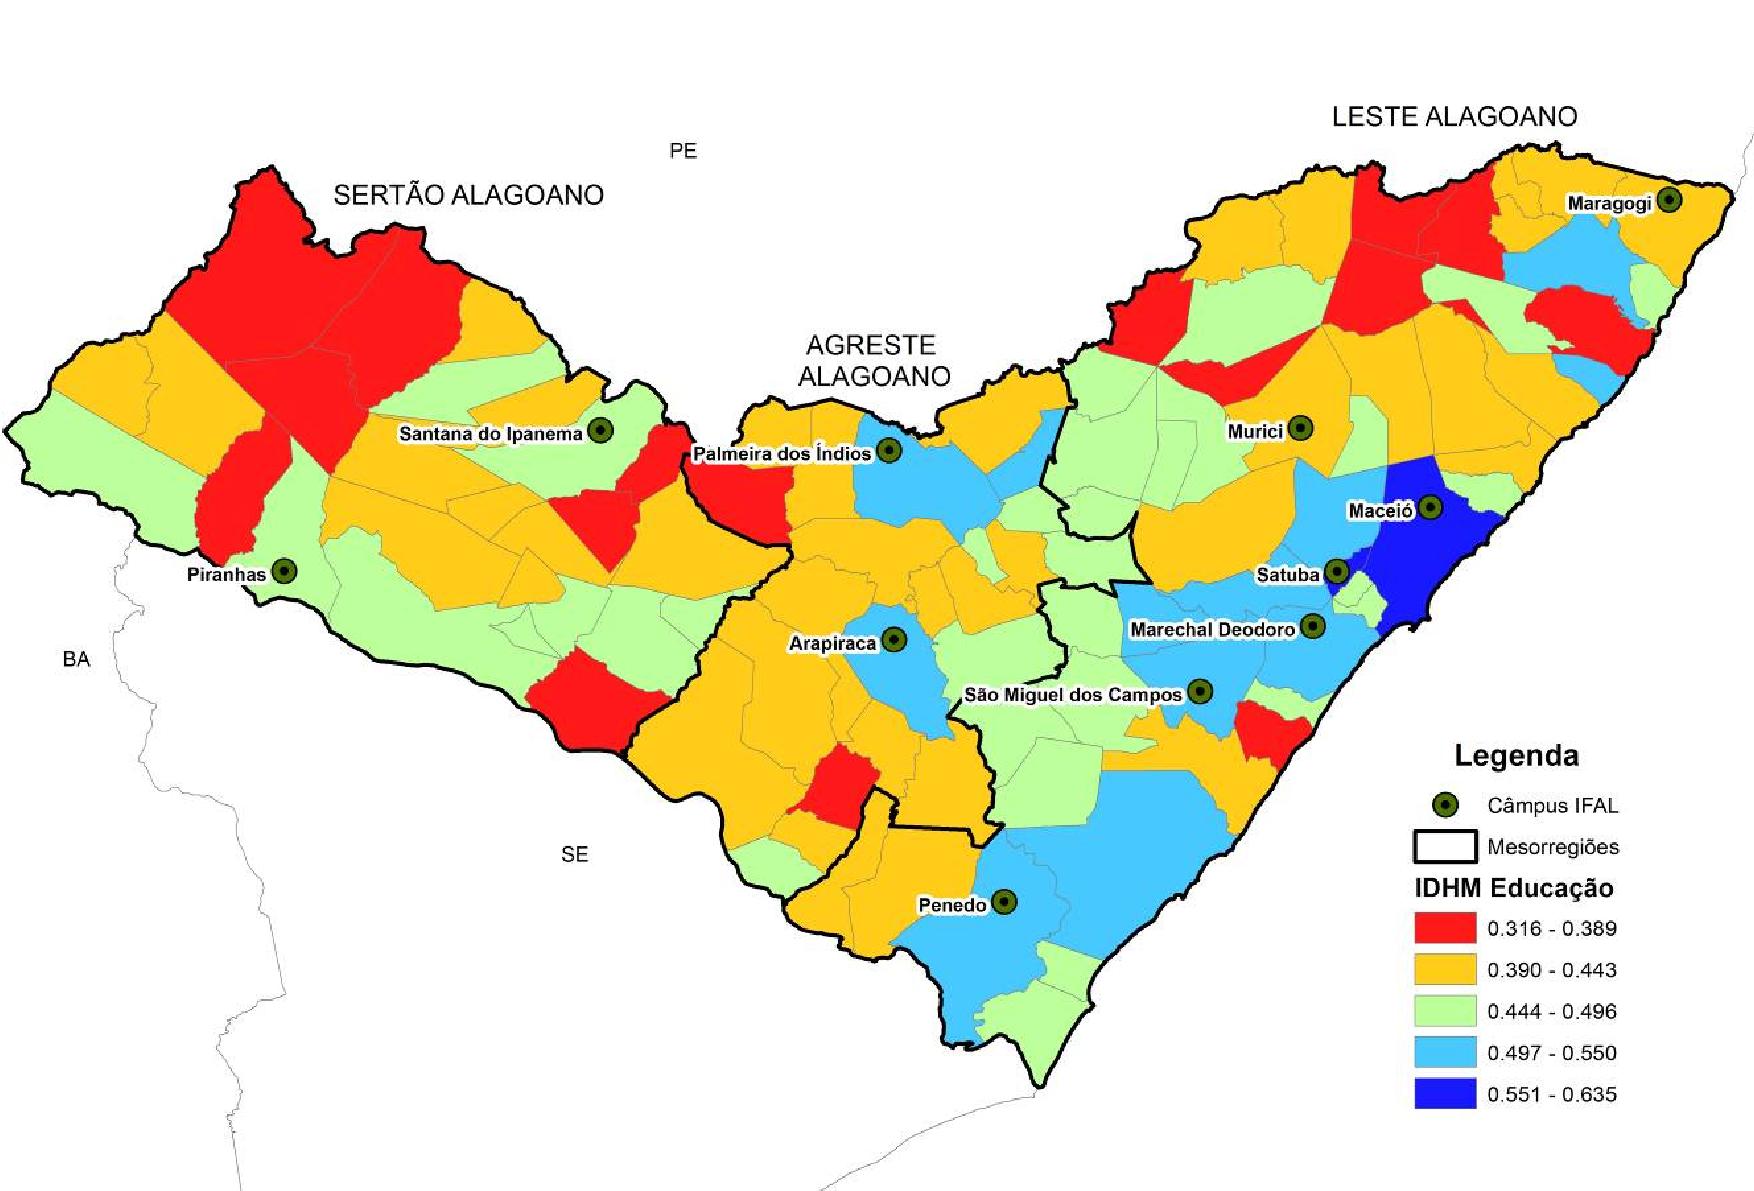 Figura 6: Alagoas - A variável Escolaridade no IDHM, 2010 Fonte: PNUD/Atlas IDHM, 2013.